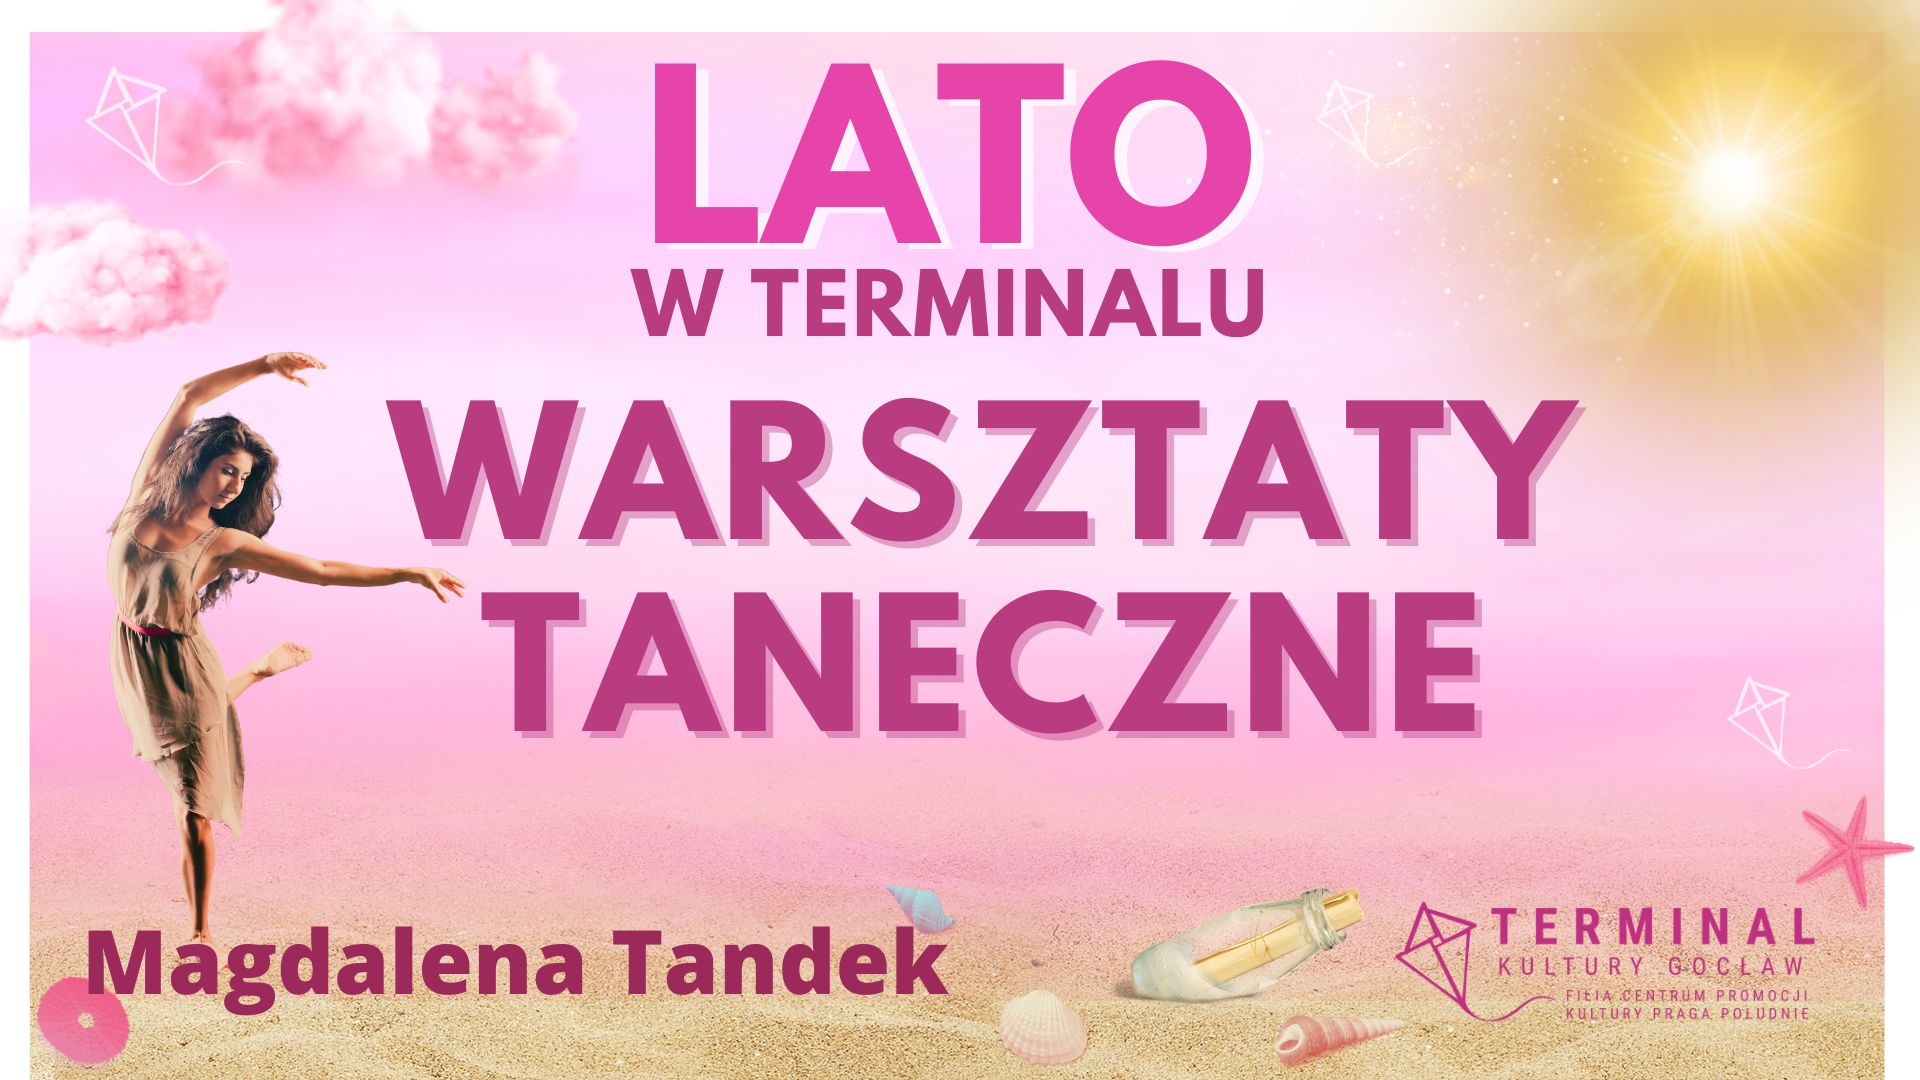 LATO - Warsztaty taneczne dla dorosłych (ballet, jazz, modern, stretching) - Magdalena Tandek